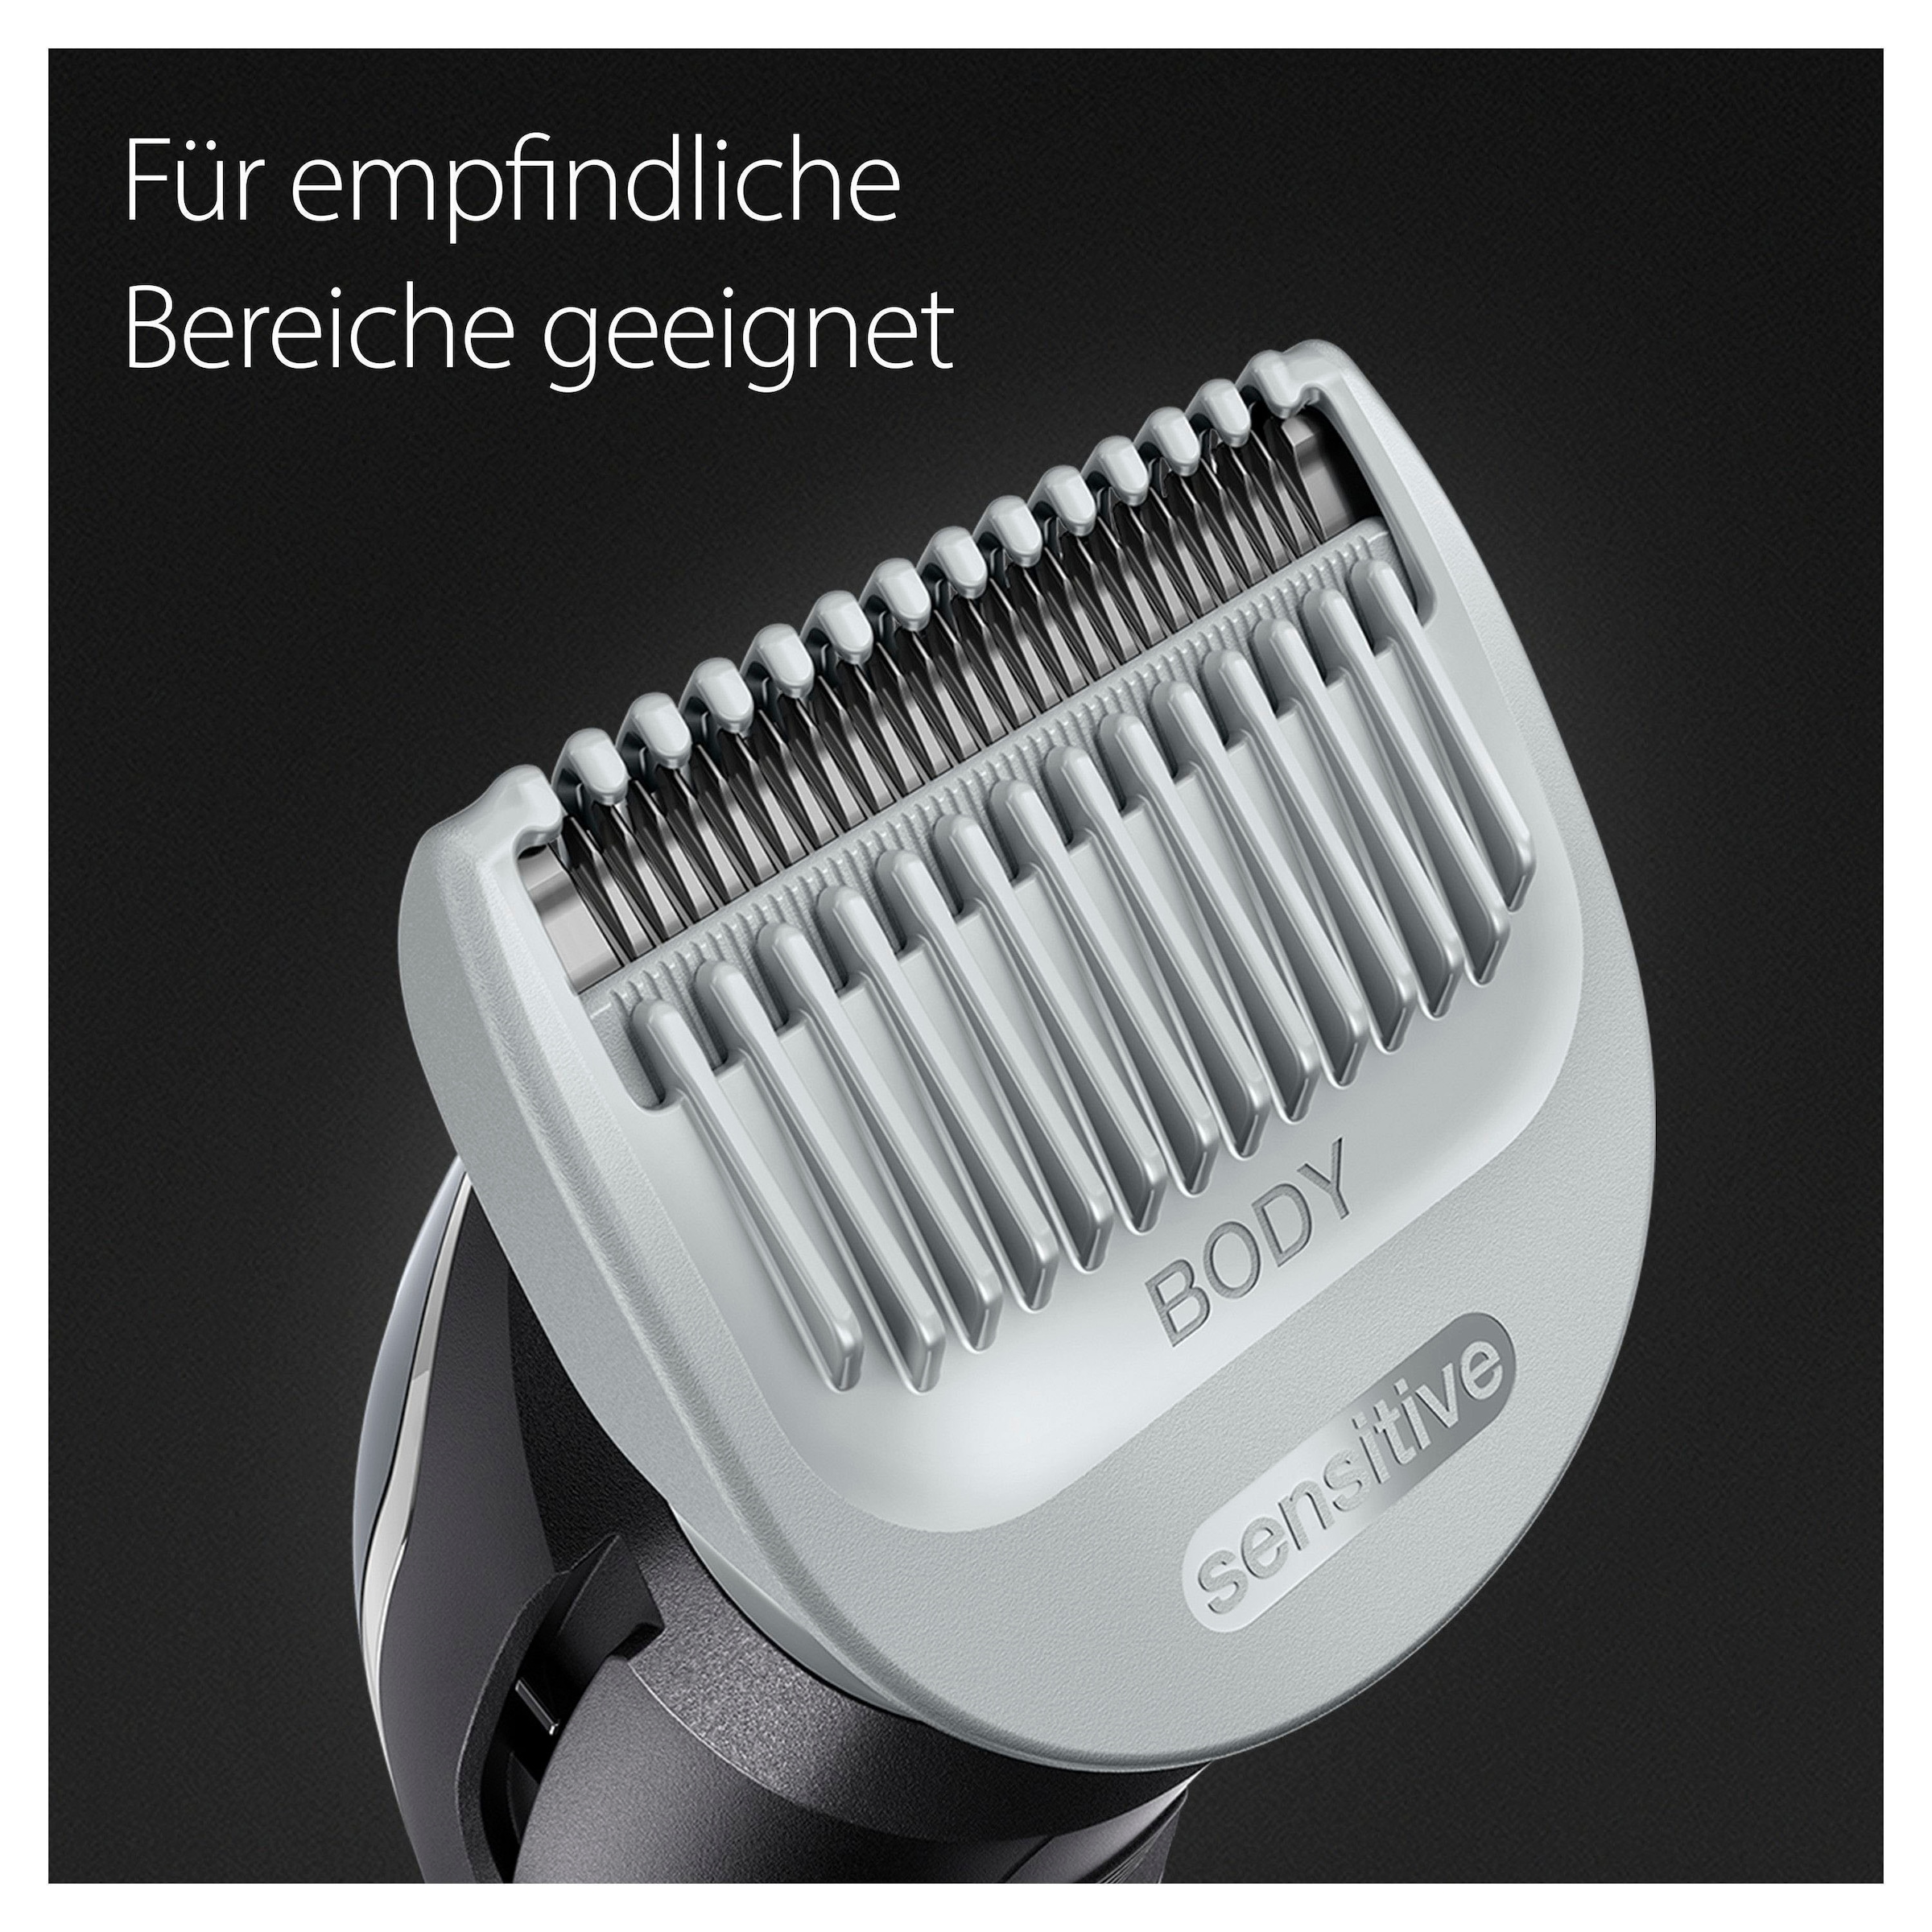 Braun Haarschneider »Bodygroomer BG5340«, 3 Aufsätze, SkinShield-Technologie, Wasserdicht